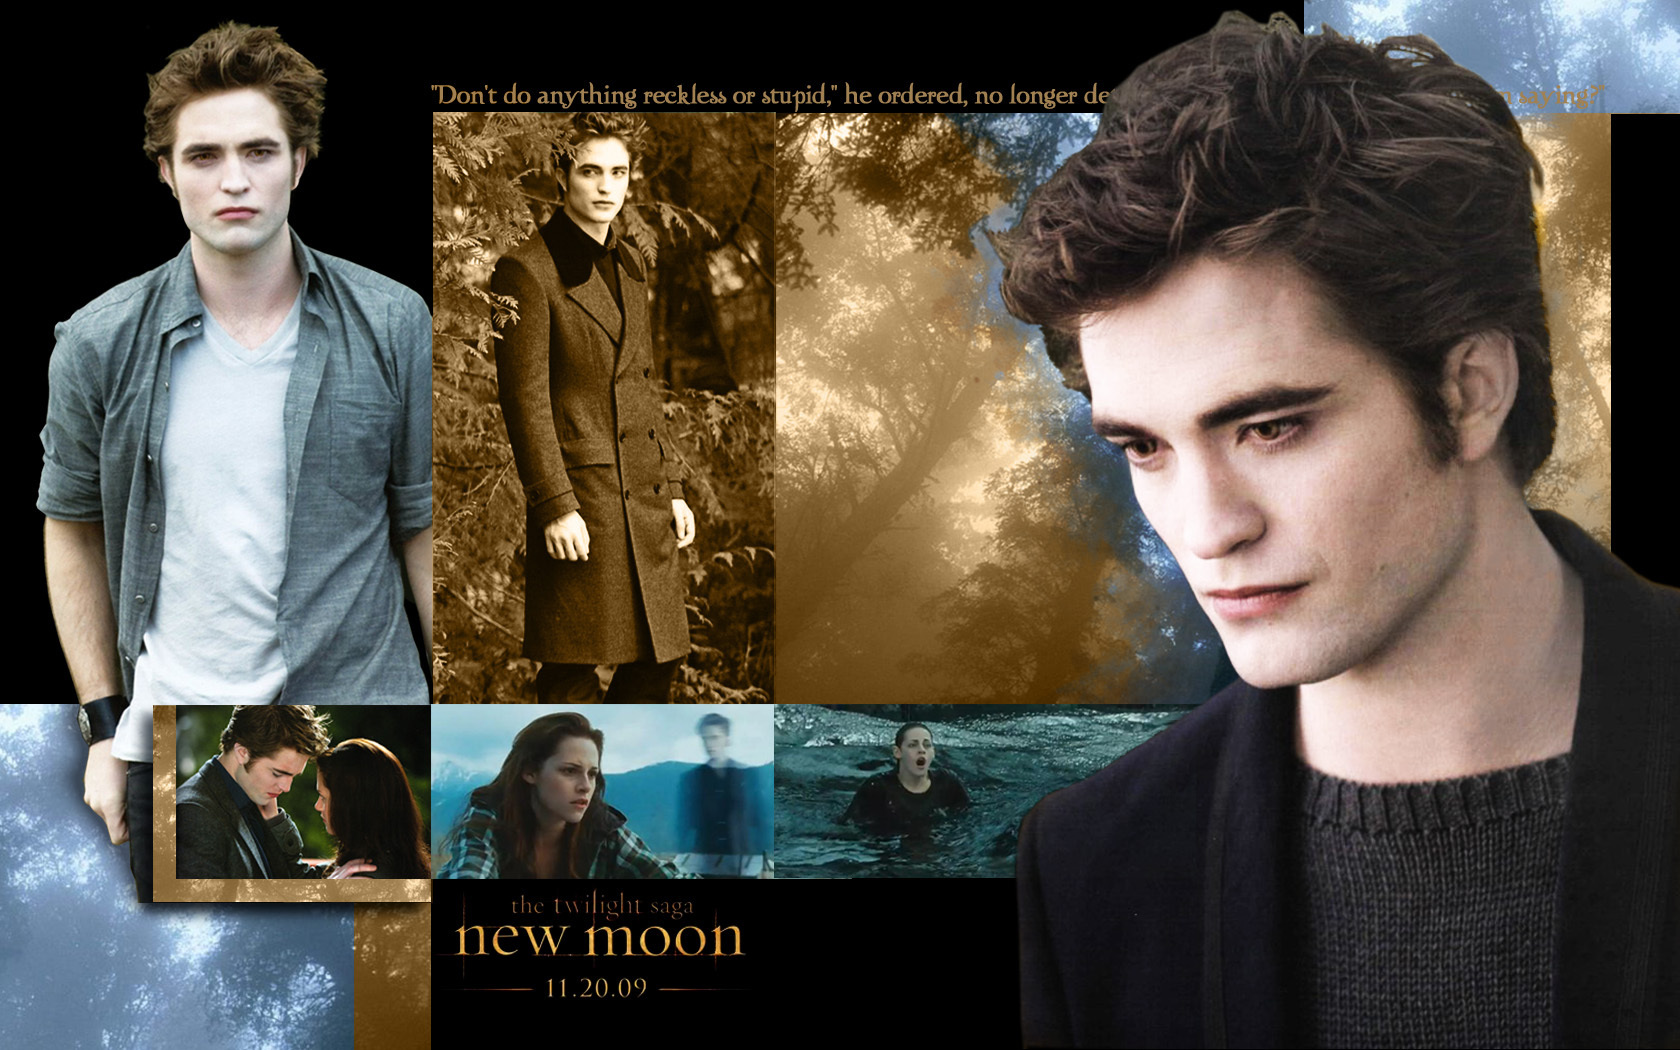 Edward Cullen Images on Fanpop.